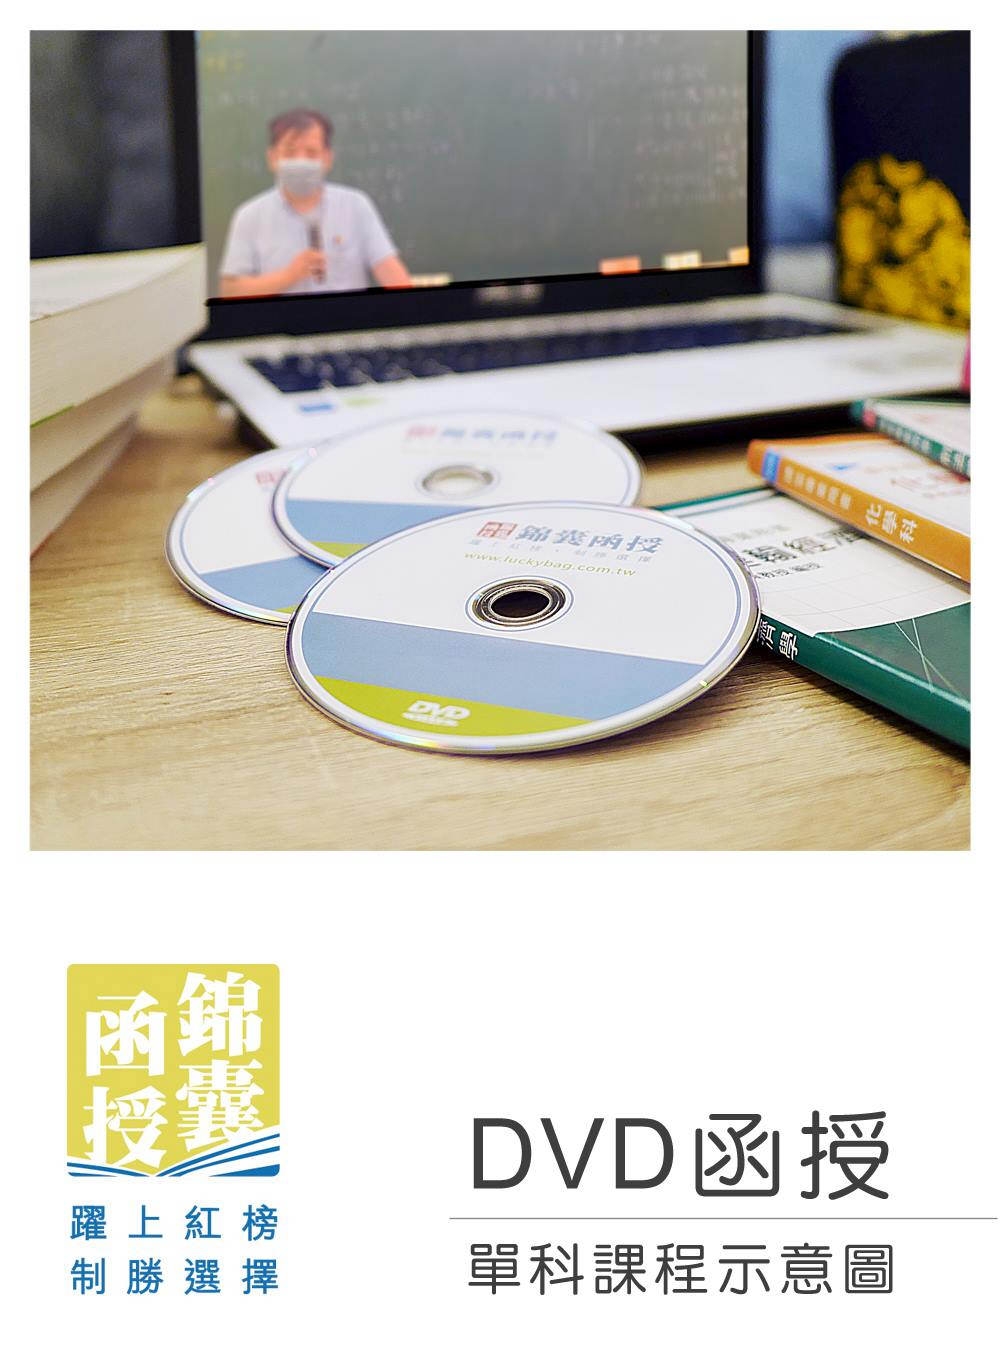 【DVD函授】農會法及其施行細則(正規班&進階班)-單科課程...